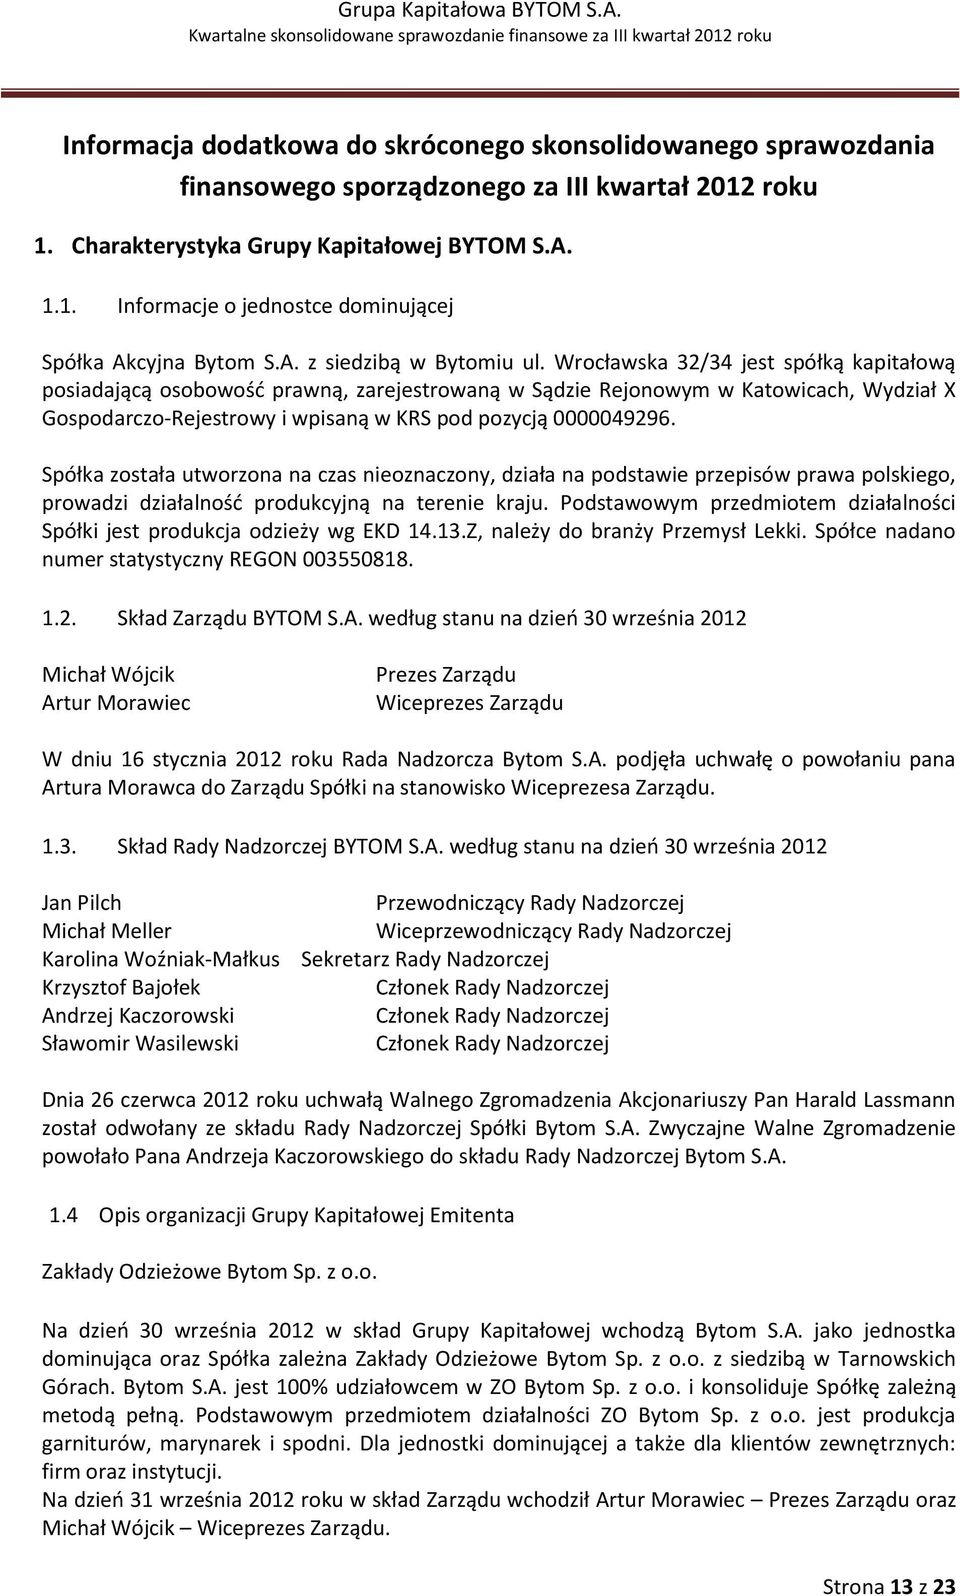 Wrocławska 32/34 jest spółką kapitałową posiadającą osobowość prawną, zarejestrowaną w Sądzie Rejonowym w Katowicach, Wydział X Gospodarczo-Rejestrowy i wpisaną w KRS pod pozycją 0000049296.